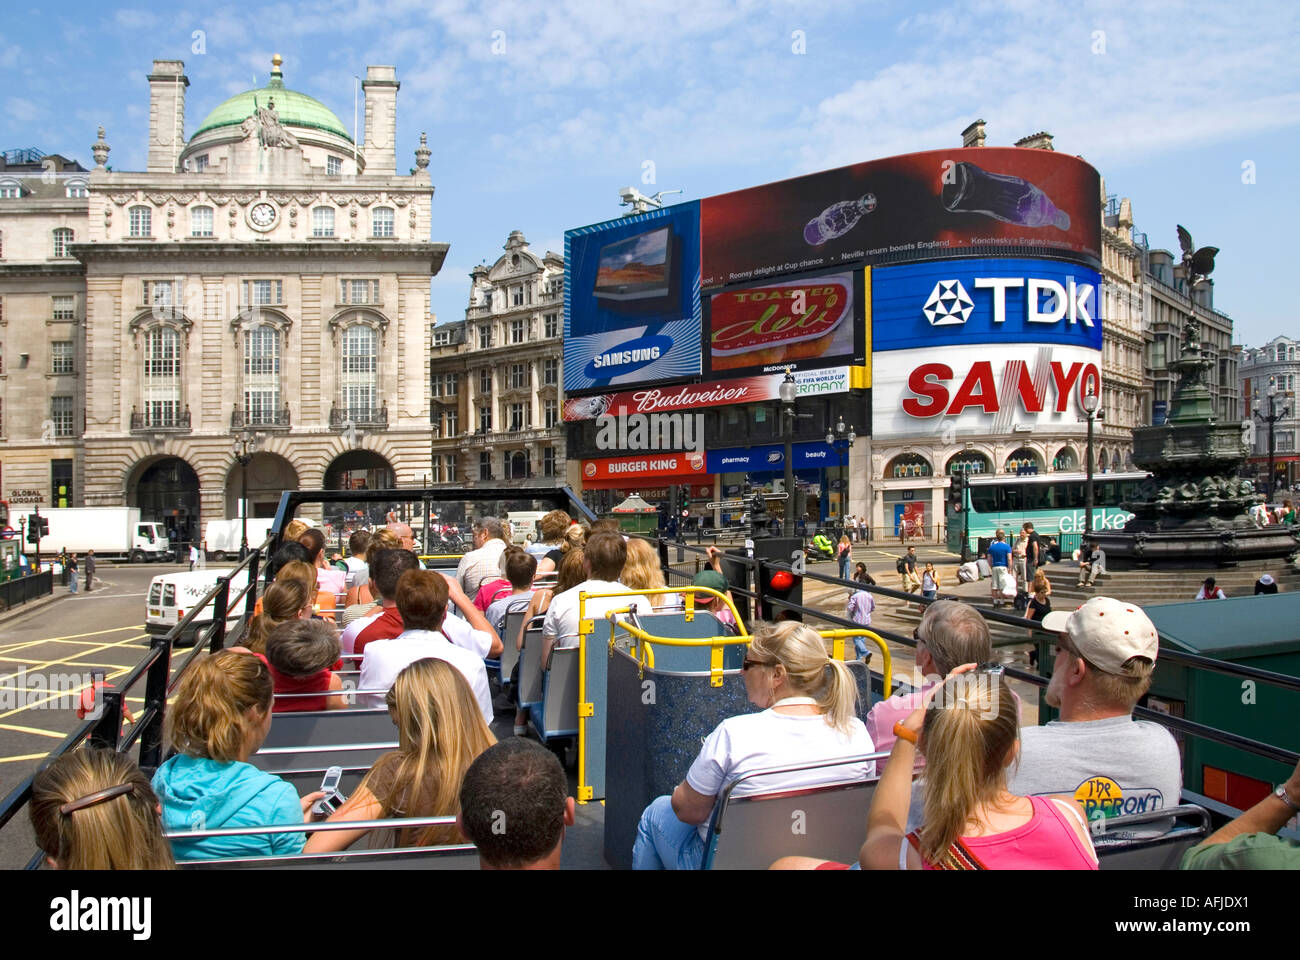 Londra passeggeri a bordo ponte superiore di open top sightseeing tour bus con turisti viste verso Piccadilly Circus & Eros con un cartellone pubblicitario REGNO UNITO Foto Stock